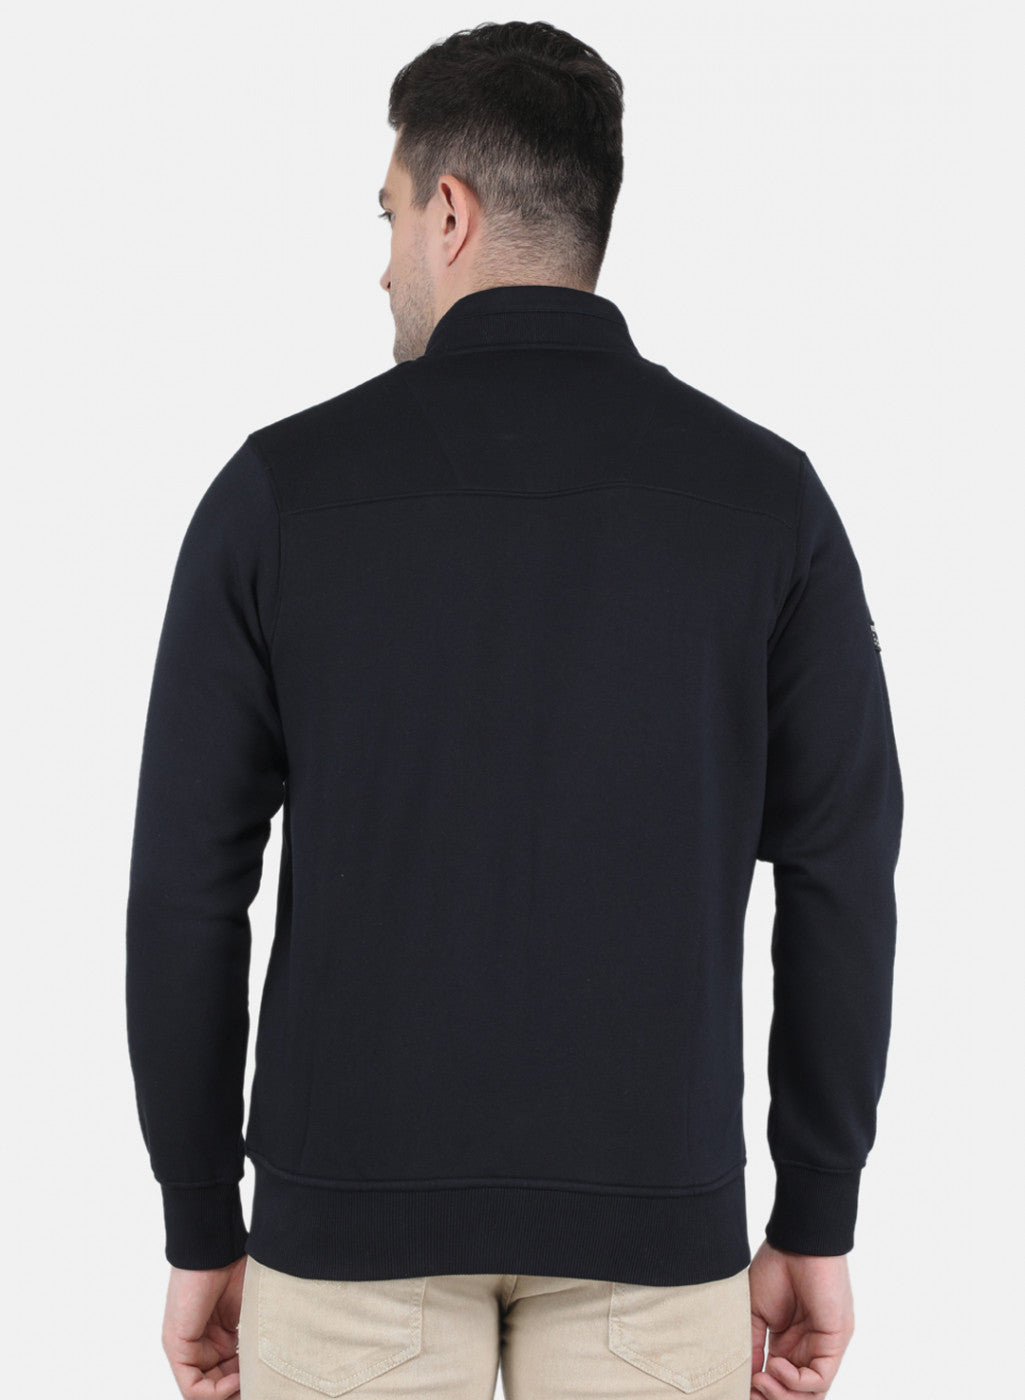 Men NAvy Blue Glowing in Dark Branding with Zipper Pocket Sweatshirt